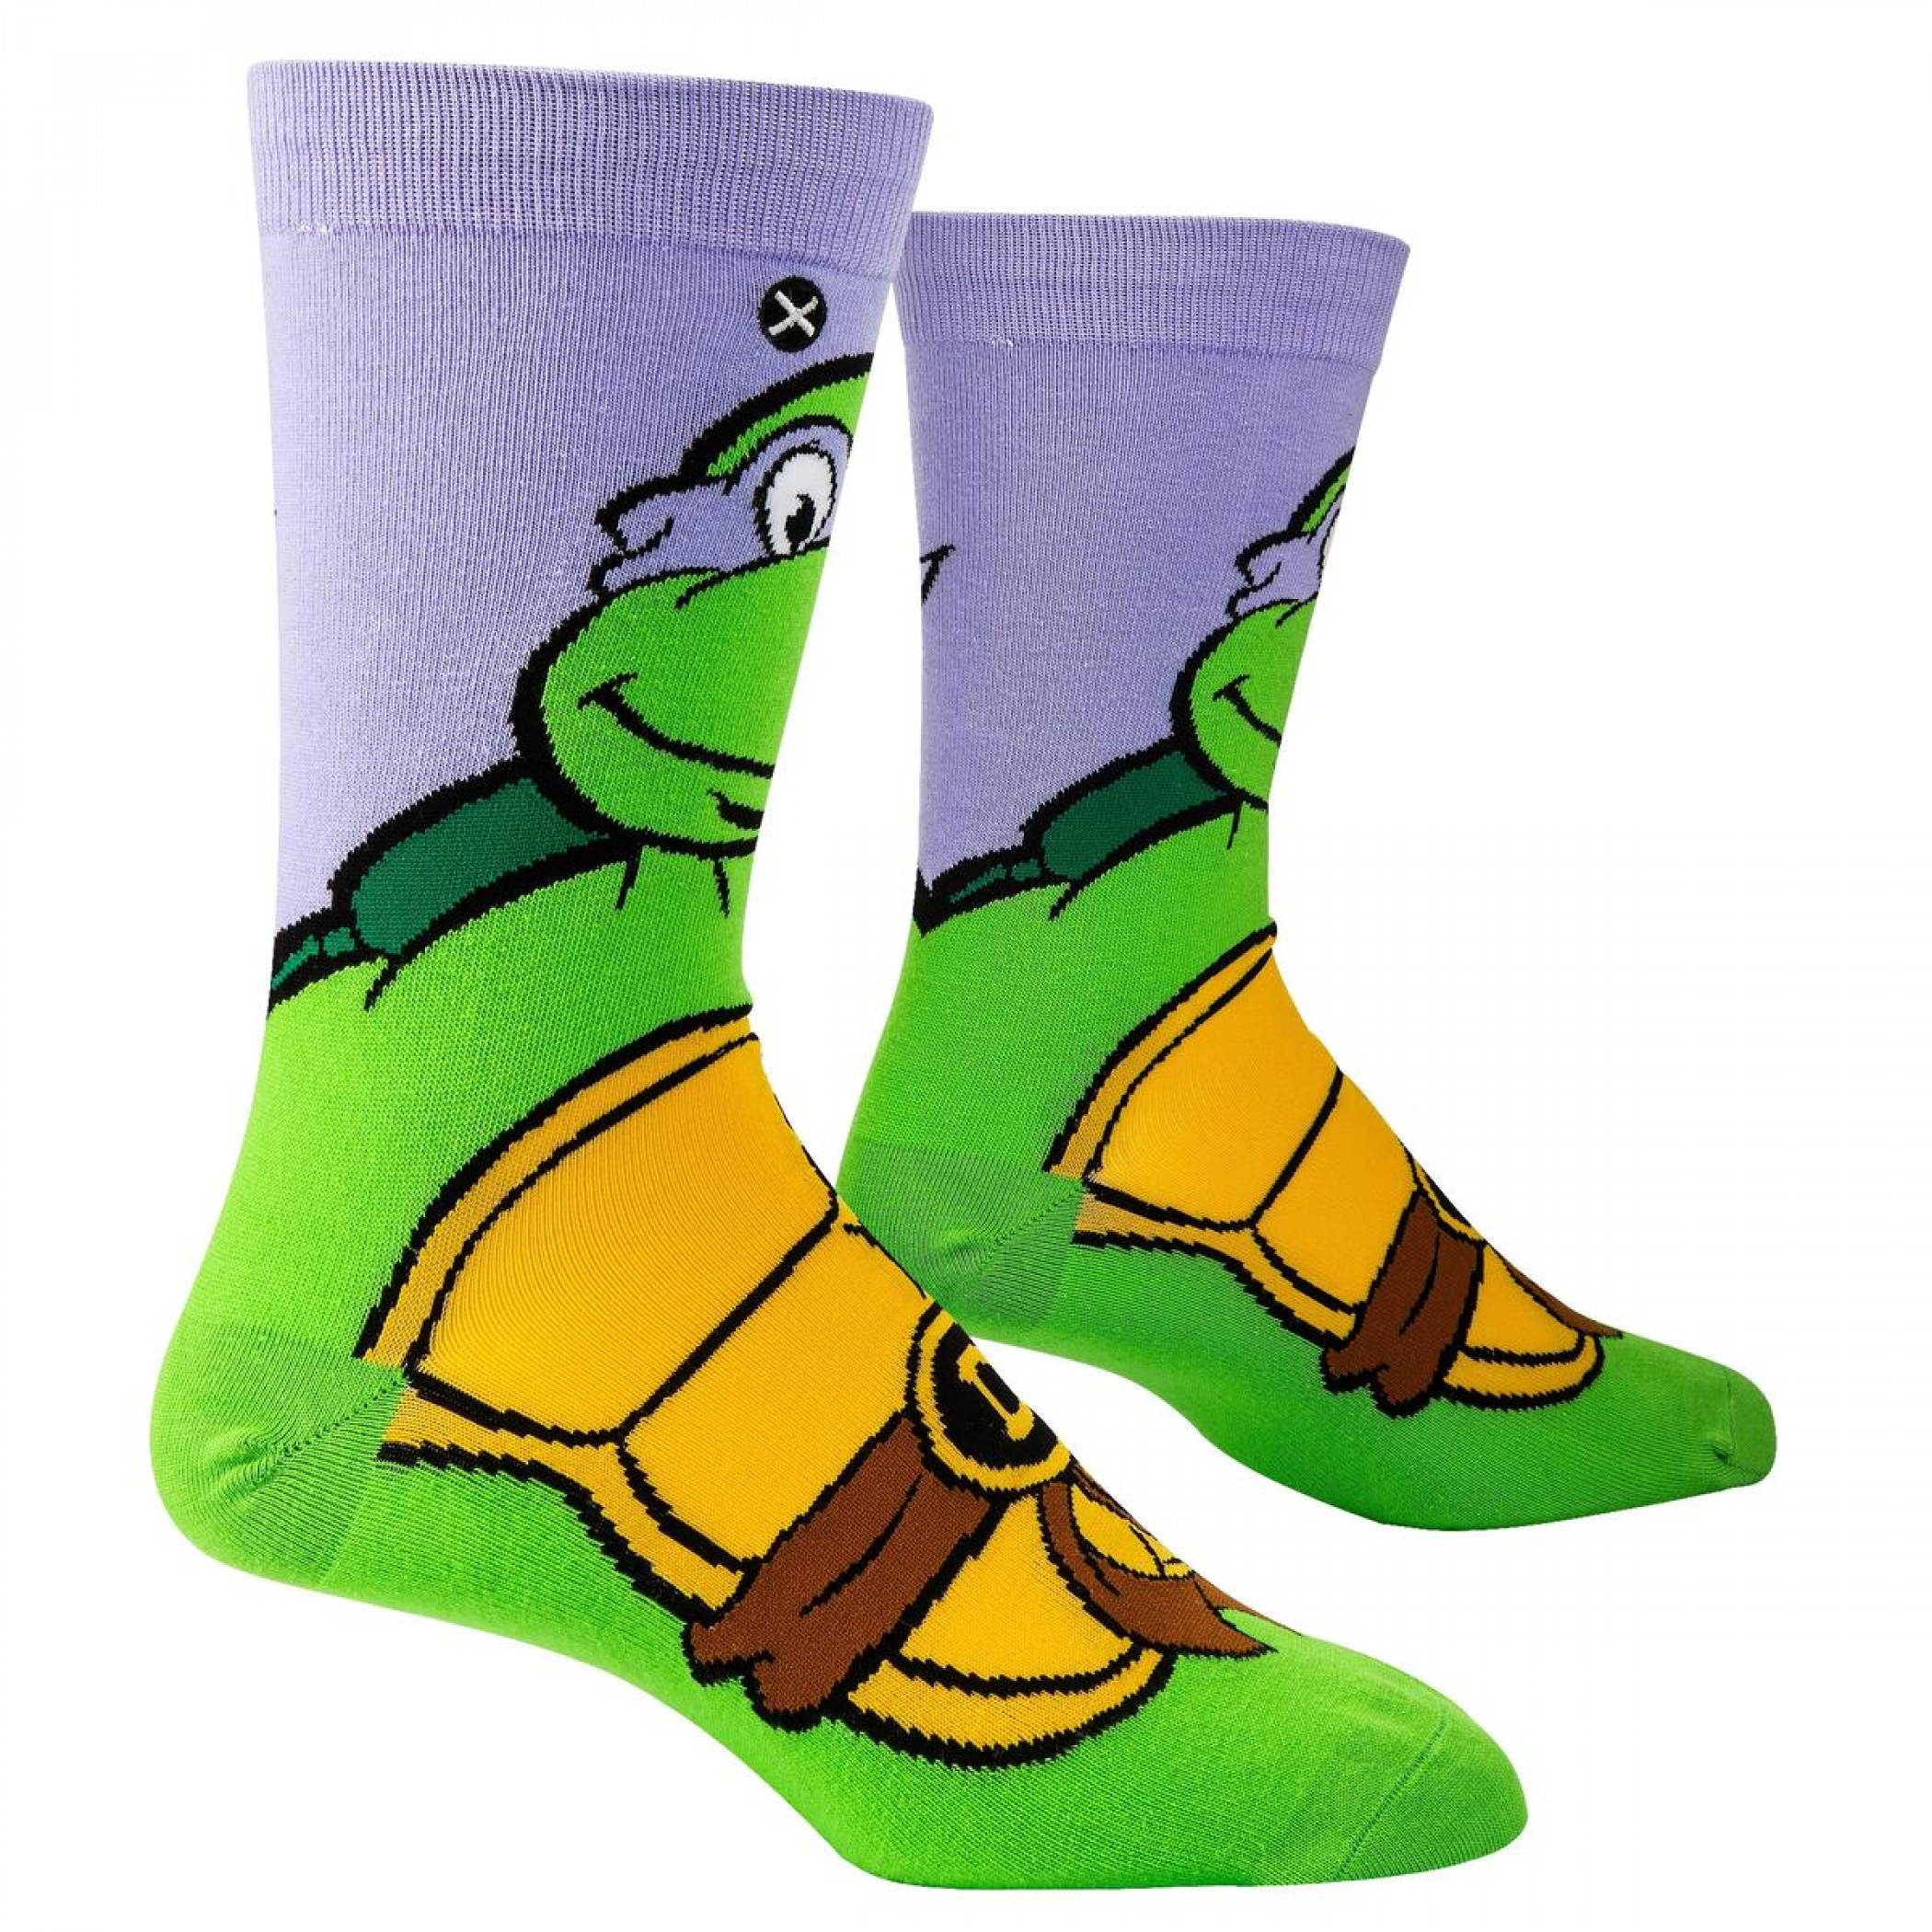 Teenage Mutant Ninja Turtles Donatello Crew Socks